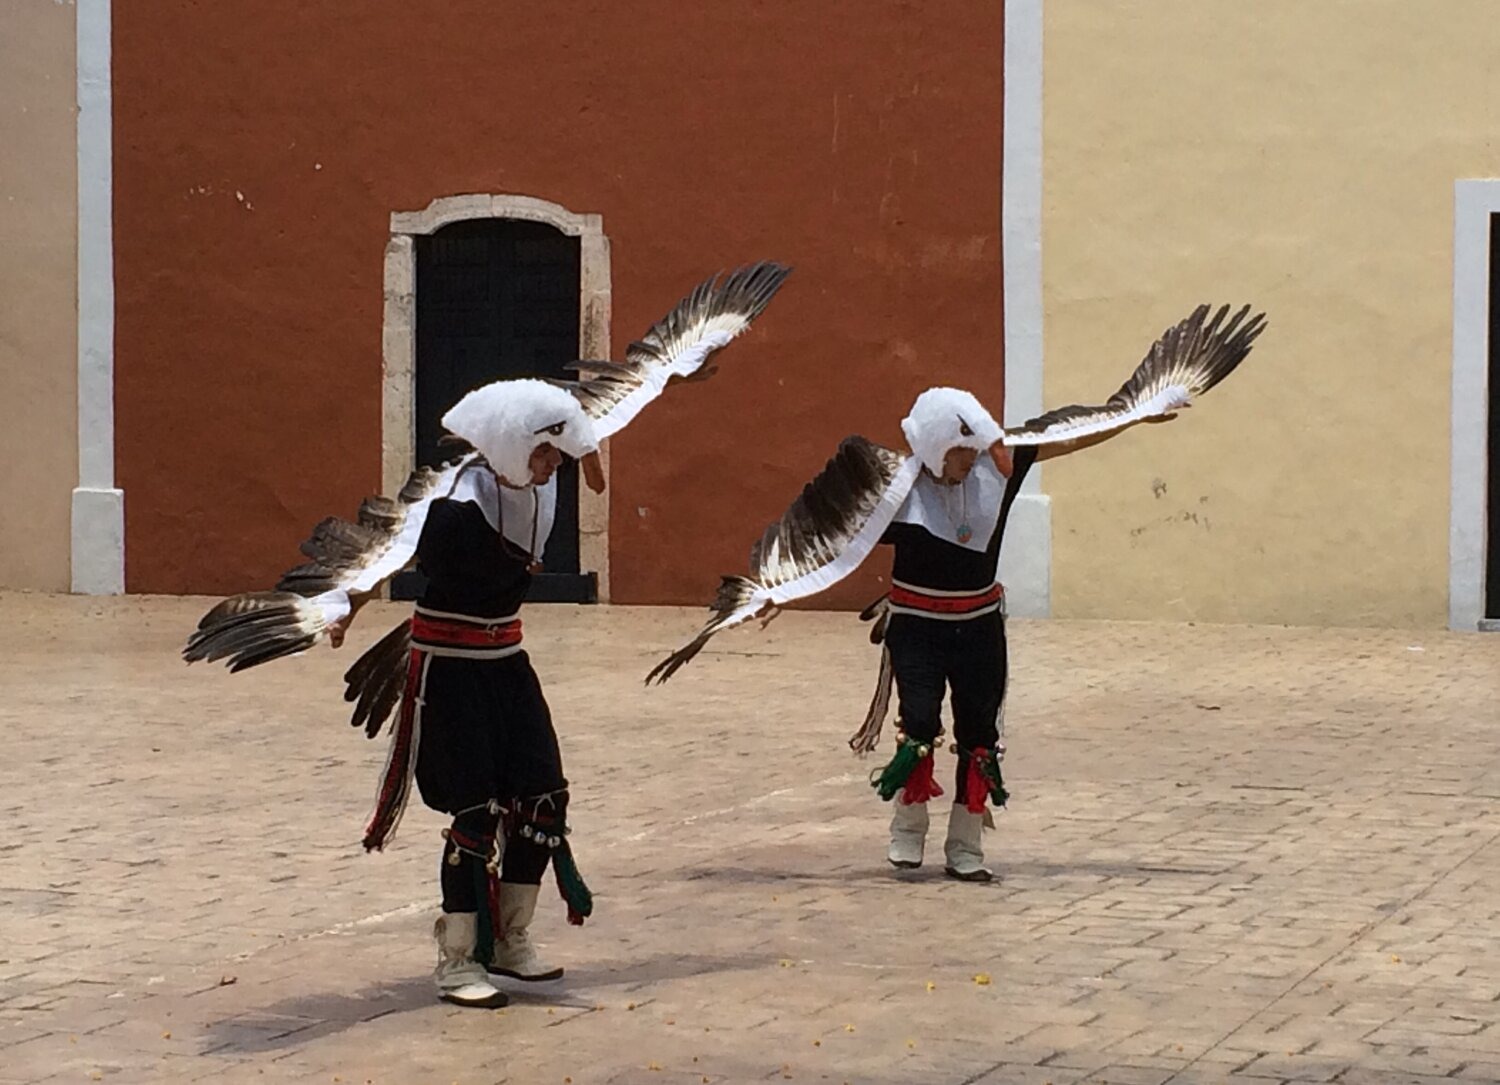  - Pueblo youth dancing “Eagle” in the Yucatan, Mexico. (Photo Credit: Russ Bodnar)